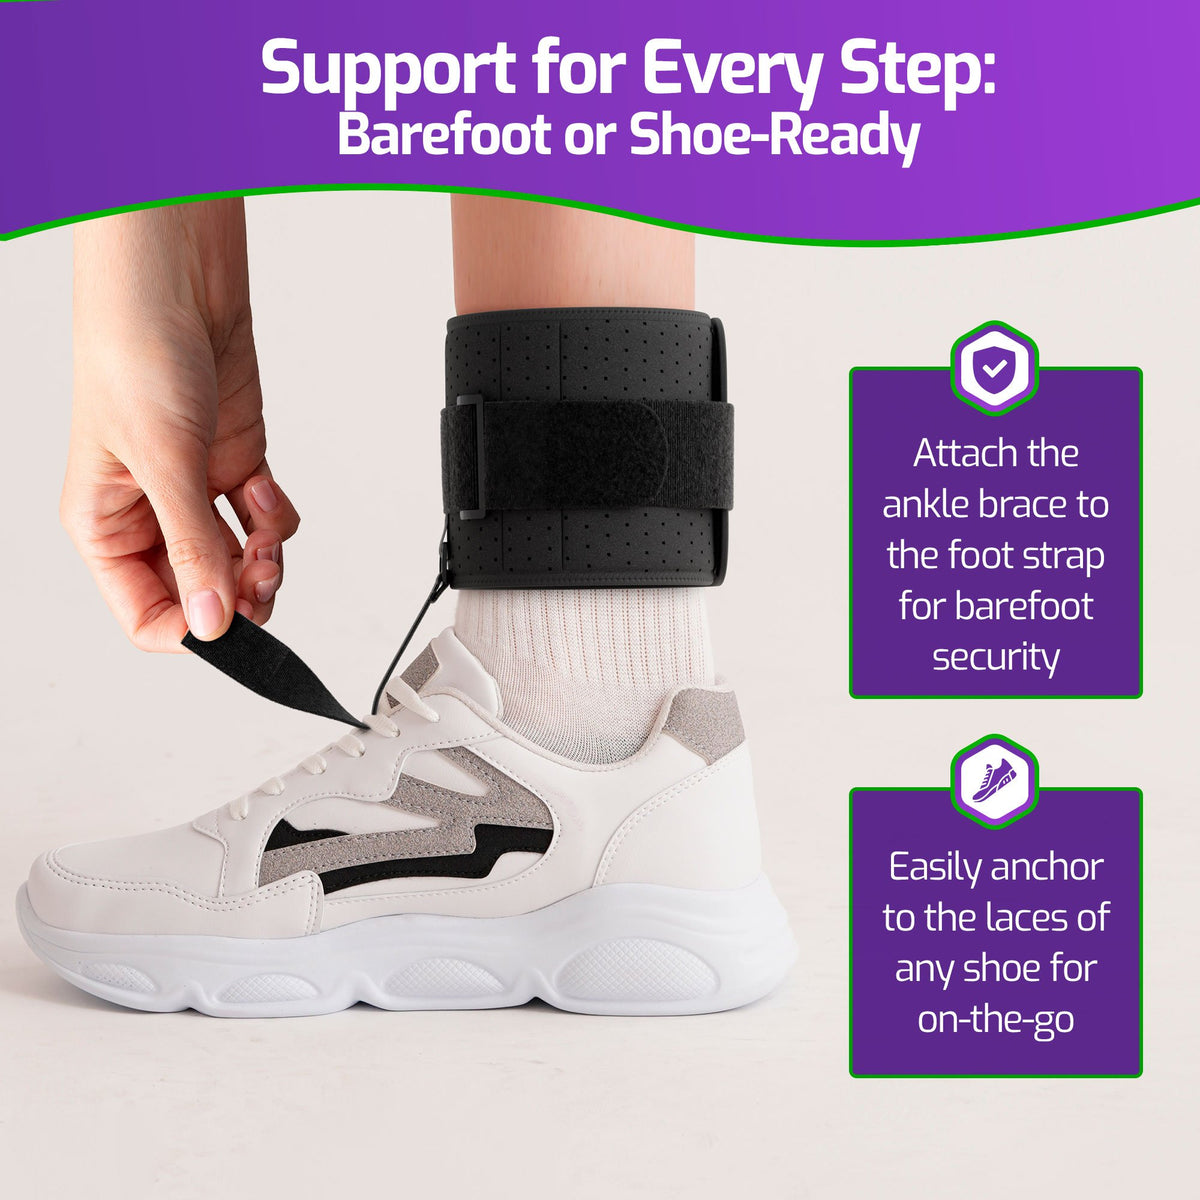 MARS WELLNESS Drop Foot Brace - AFO Splint for Foot Drop Relief and Support - Adjustable, Comfortable Foot Drop Brace Ankle Foot Orthosis